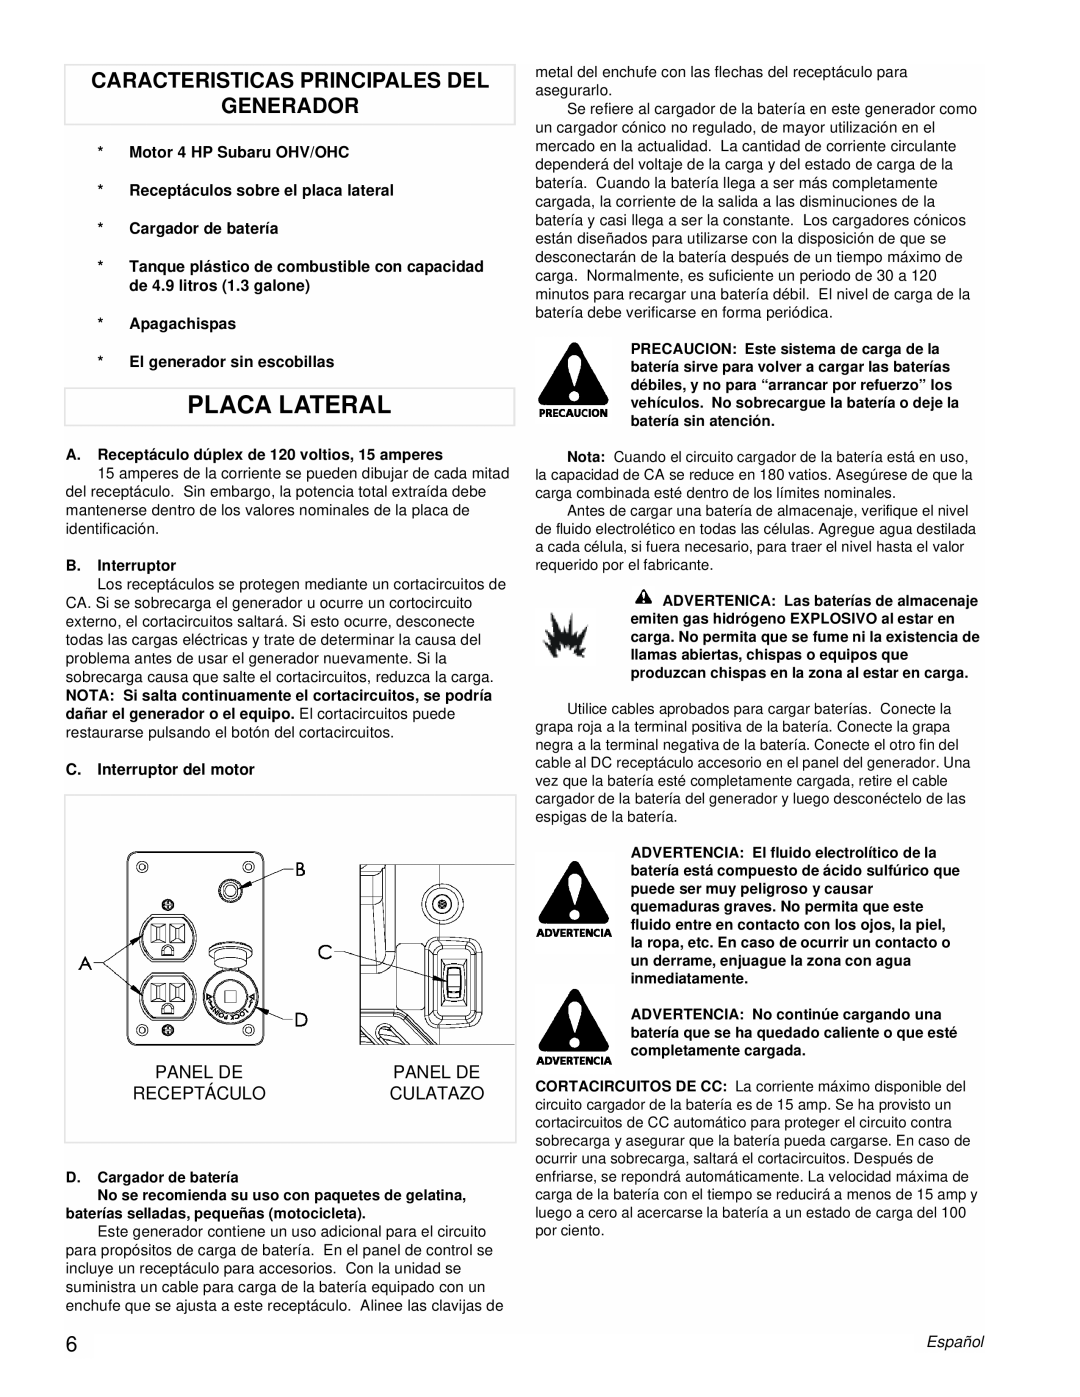 Powermate PM0431802 manual Placa Lateral, Caracteristicas Principales Del Generador, Español 